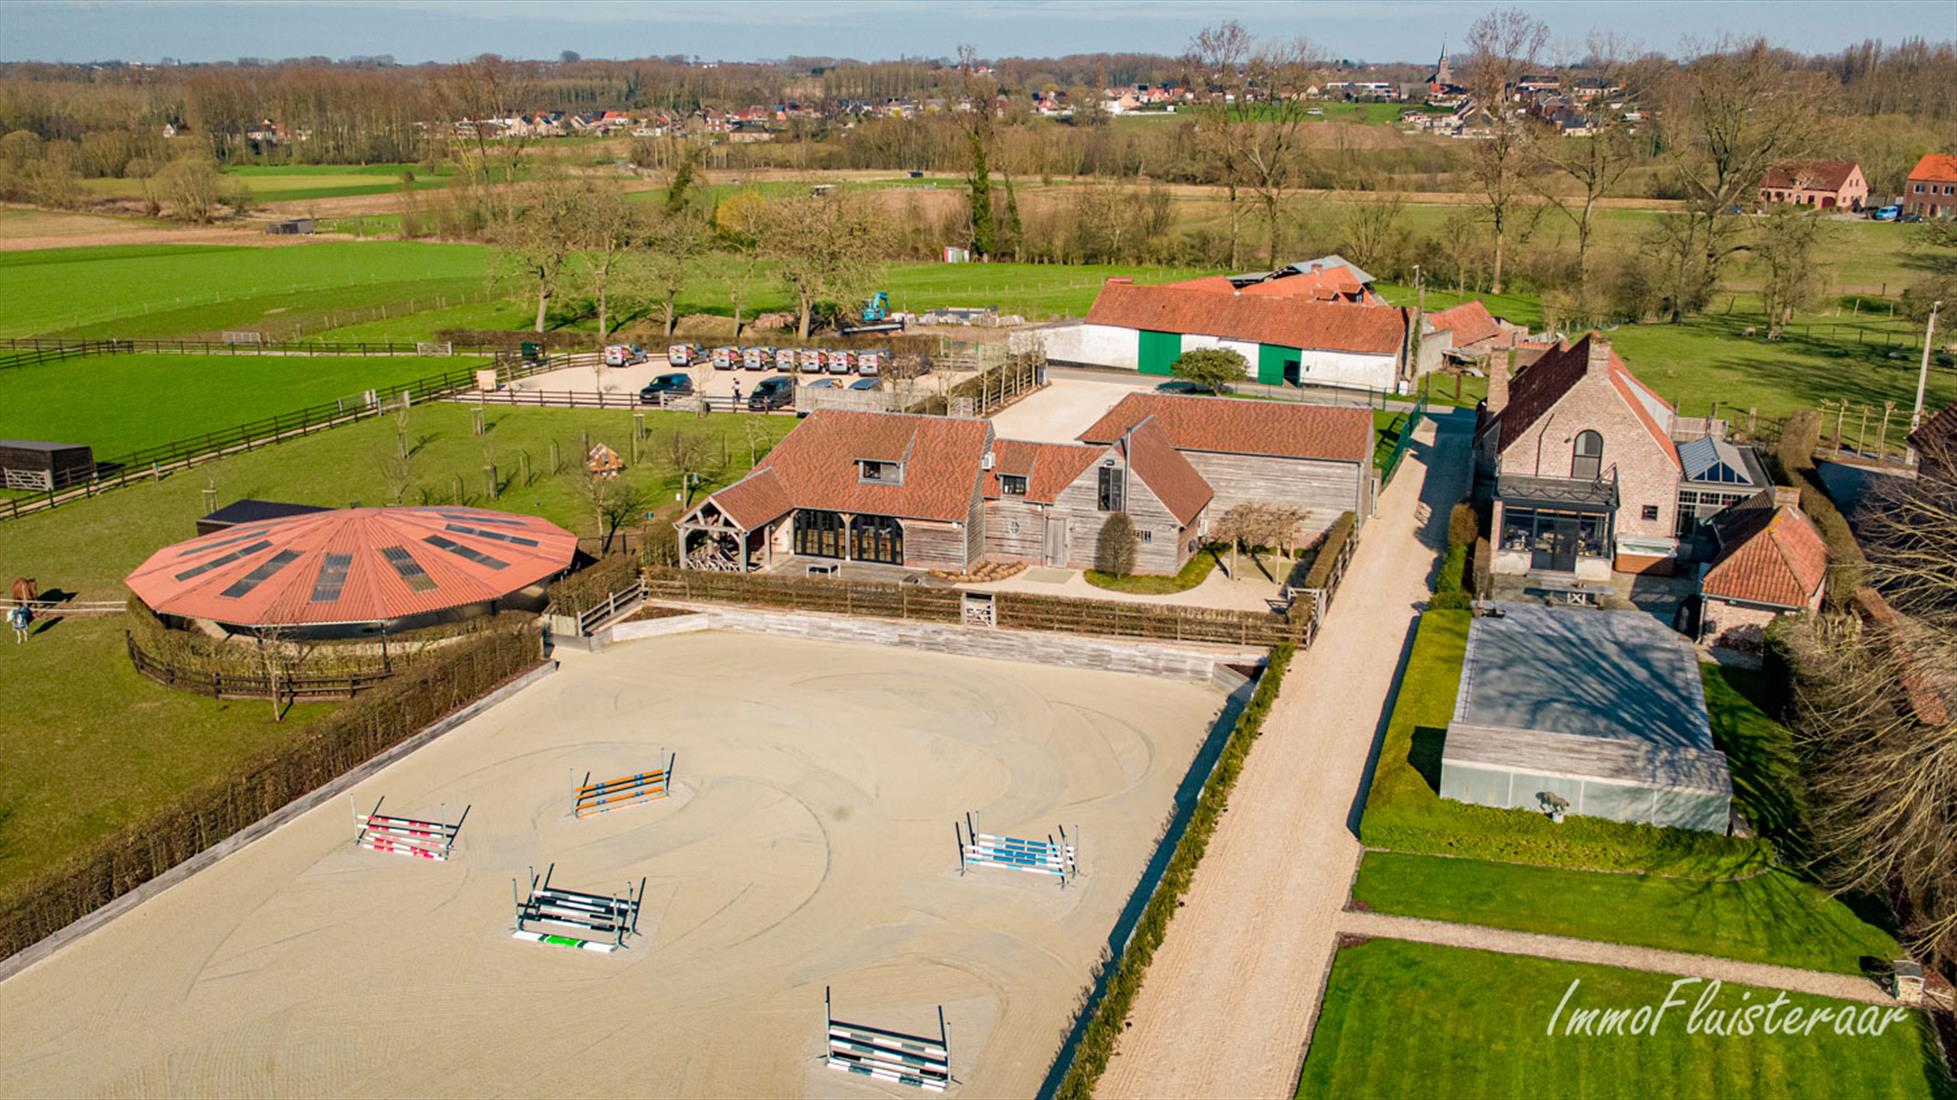 Immofluisteraar verkoopt prachtige landelijke villa met bijgebouw en professionele paardenaccommodatie